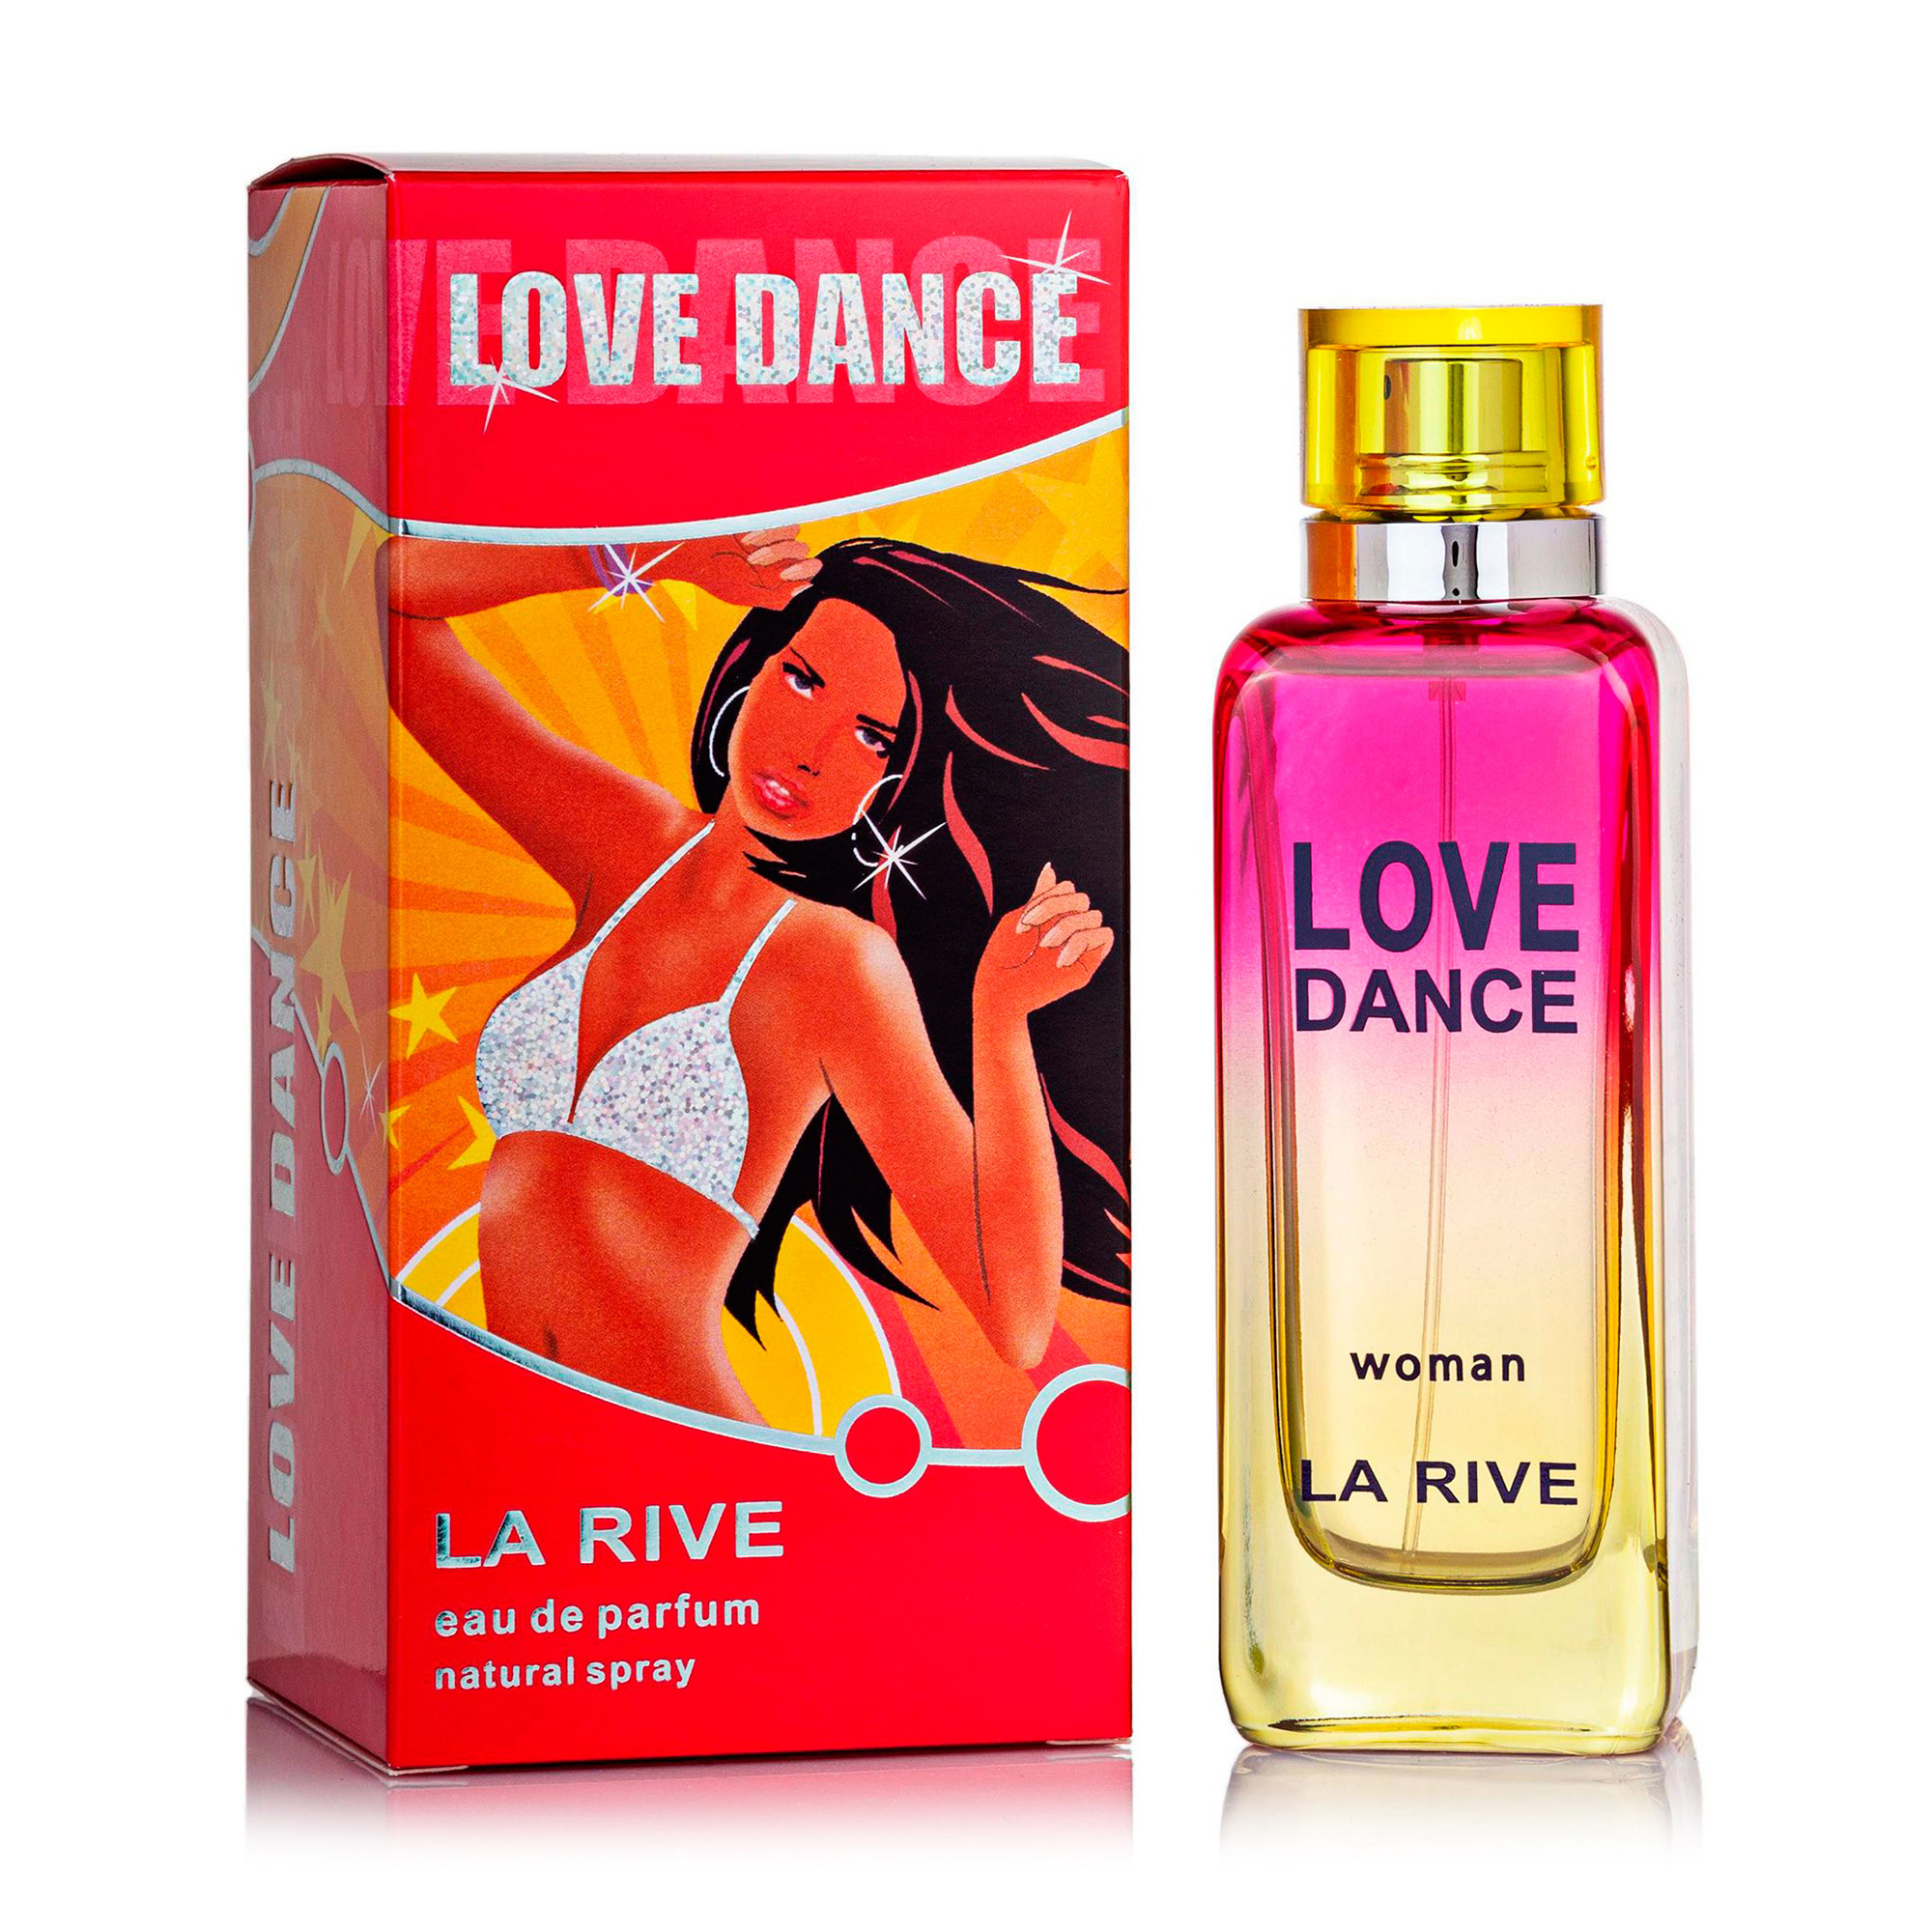 Лове парфюм. La Rive туалетная вода женская. La Rive духи женские красные. Туалетная женская вода лов дэнс. Love Dance woman la Rive.